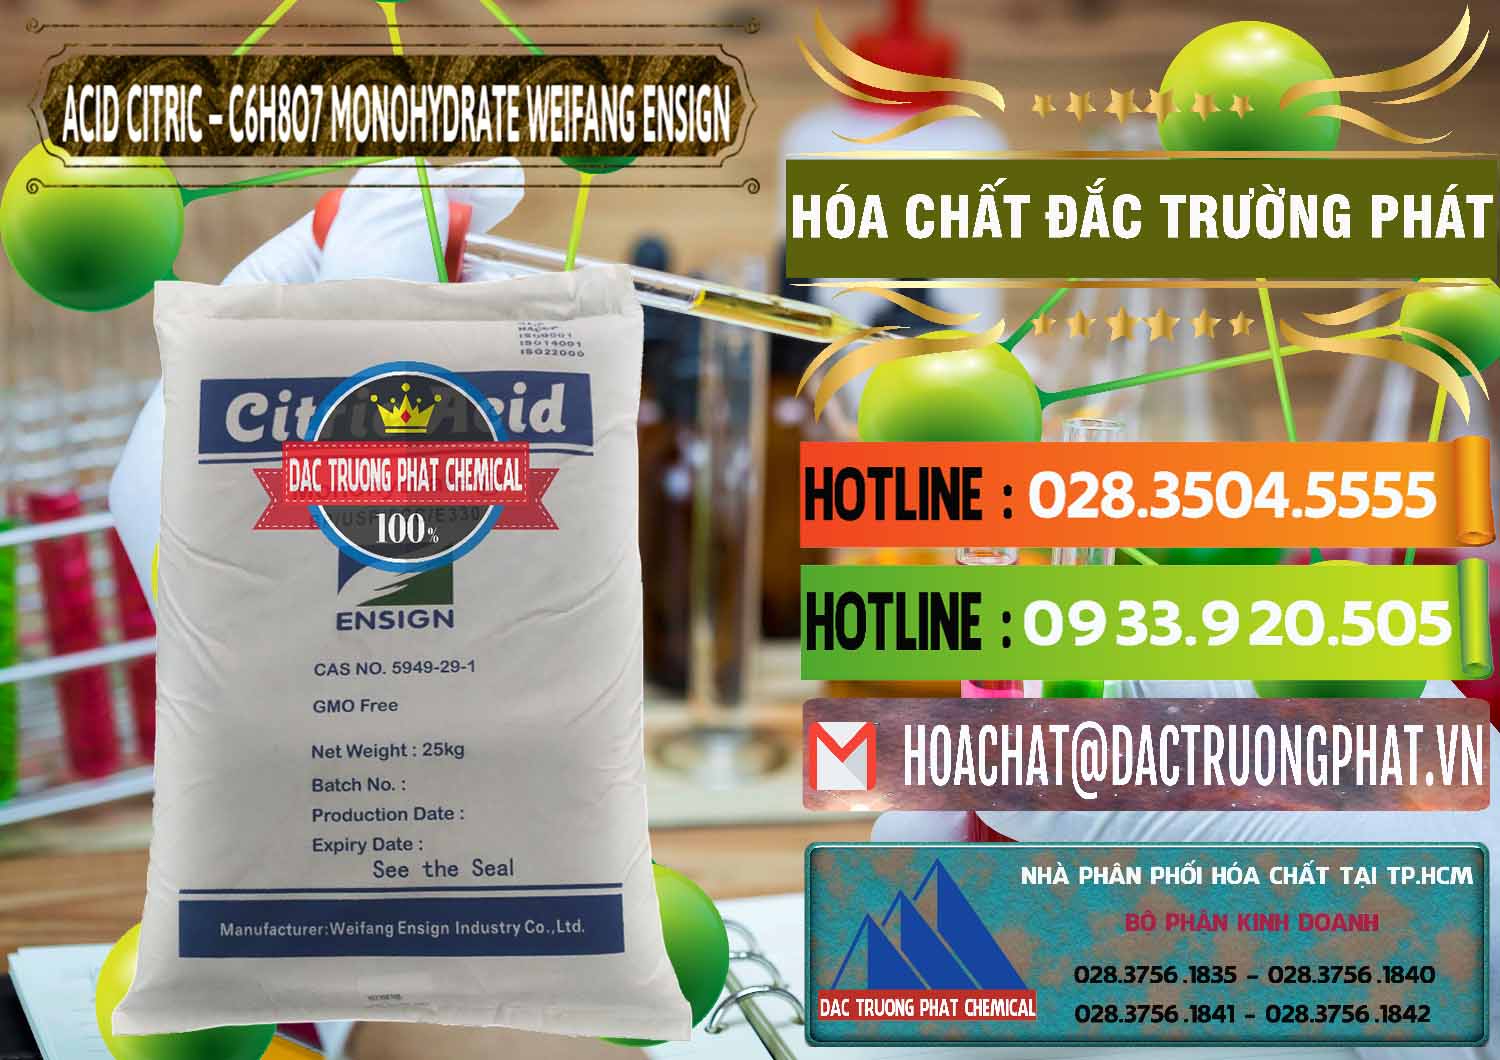 Công ty chuyên bán & cung cấp Acid Citric - Axit Citric Monohydrate Weifang Trung Quốc China - 0009 - Nơi phân phối ( cung cấp ) hóa chất tại TP.HCM - cungcaphoachat.com.vn